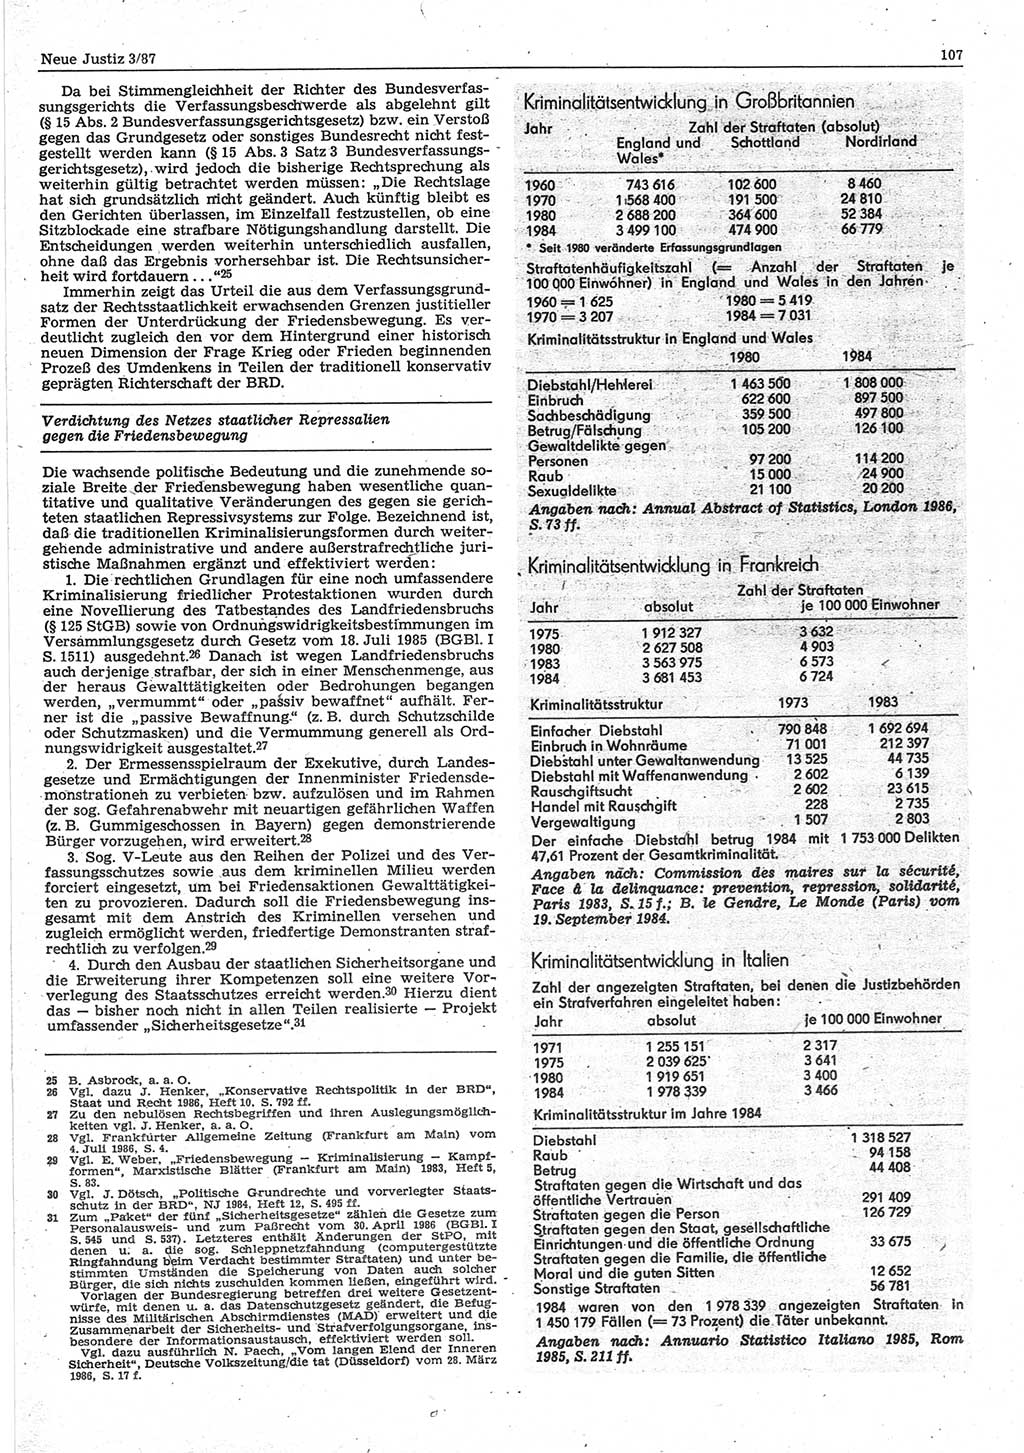 Neue Justiz (NJ), Zeitschrift für sozialistisches Recht und Gesetzlichkeit [Deutsche Demokratische Republik (DDR)], 41. Jahrgang 1987, Seite 107 (NJ DDR 1987, S. 107)